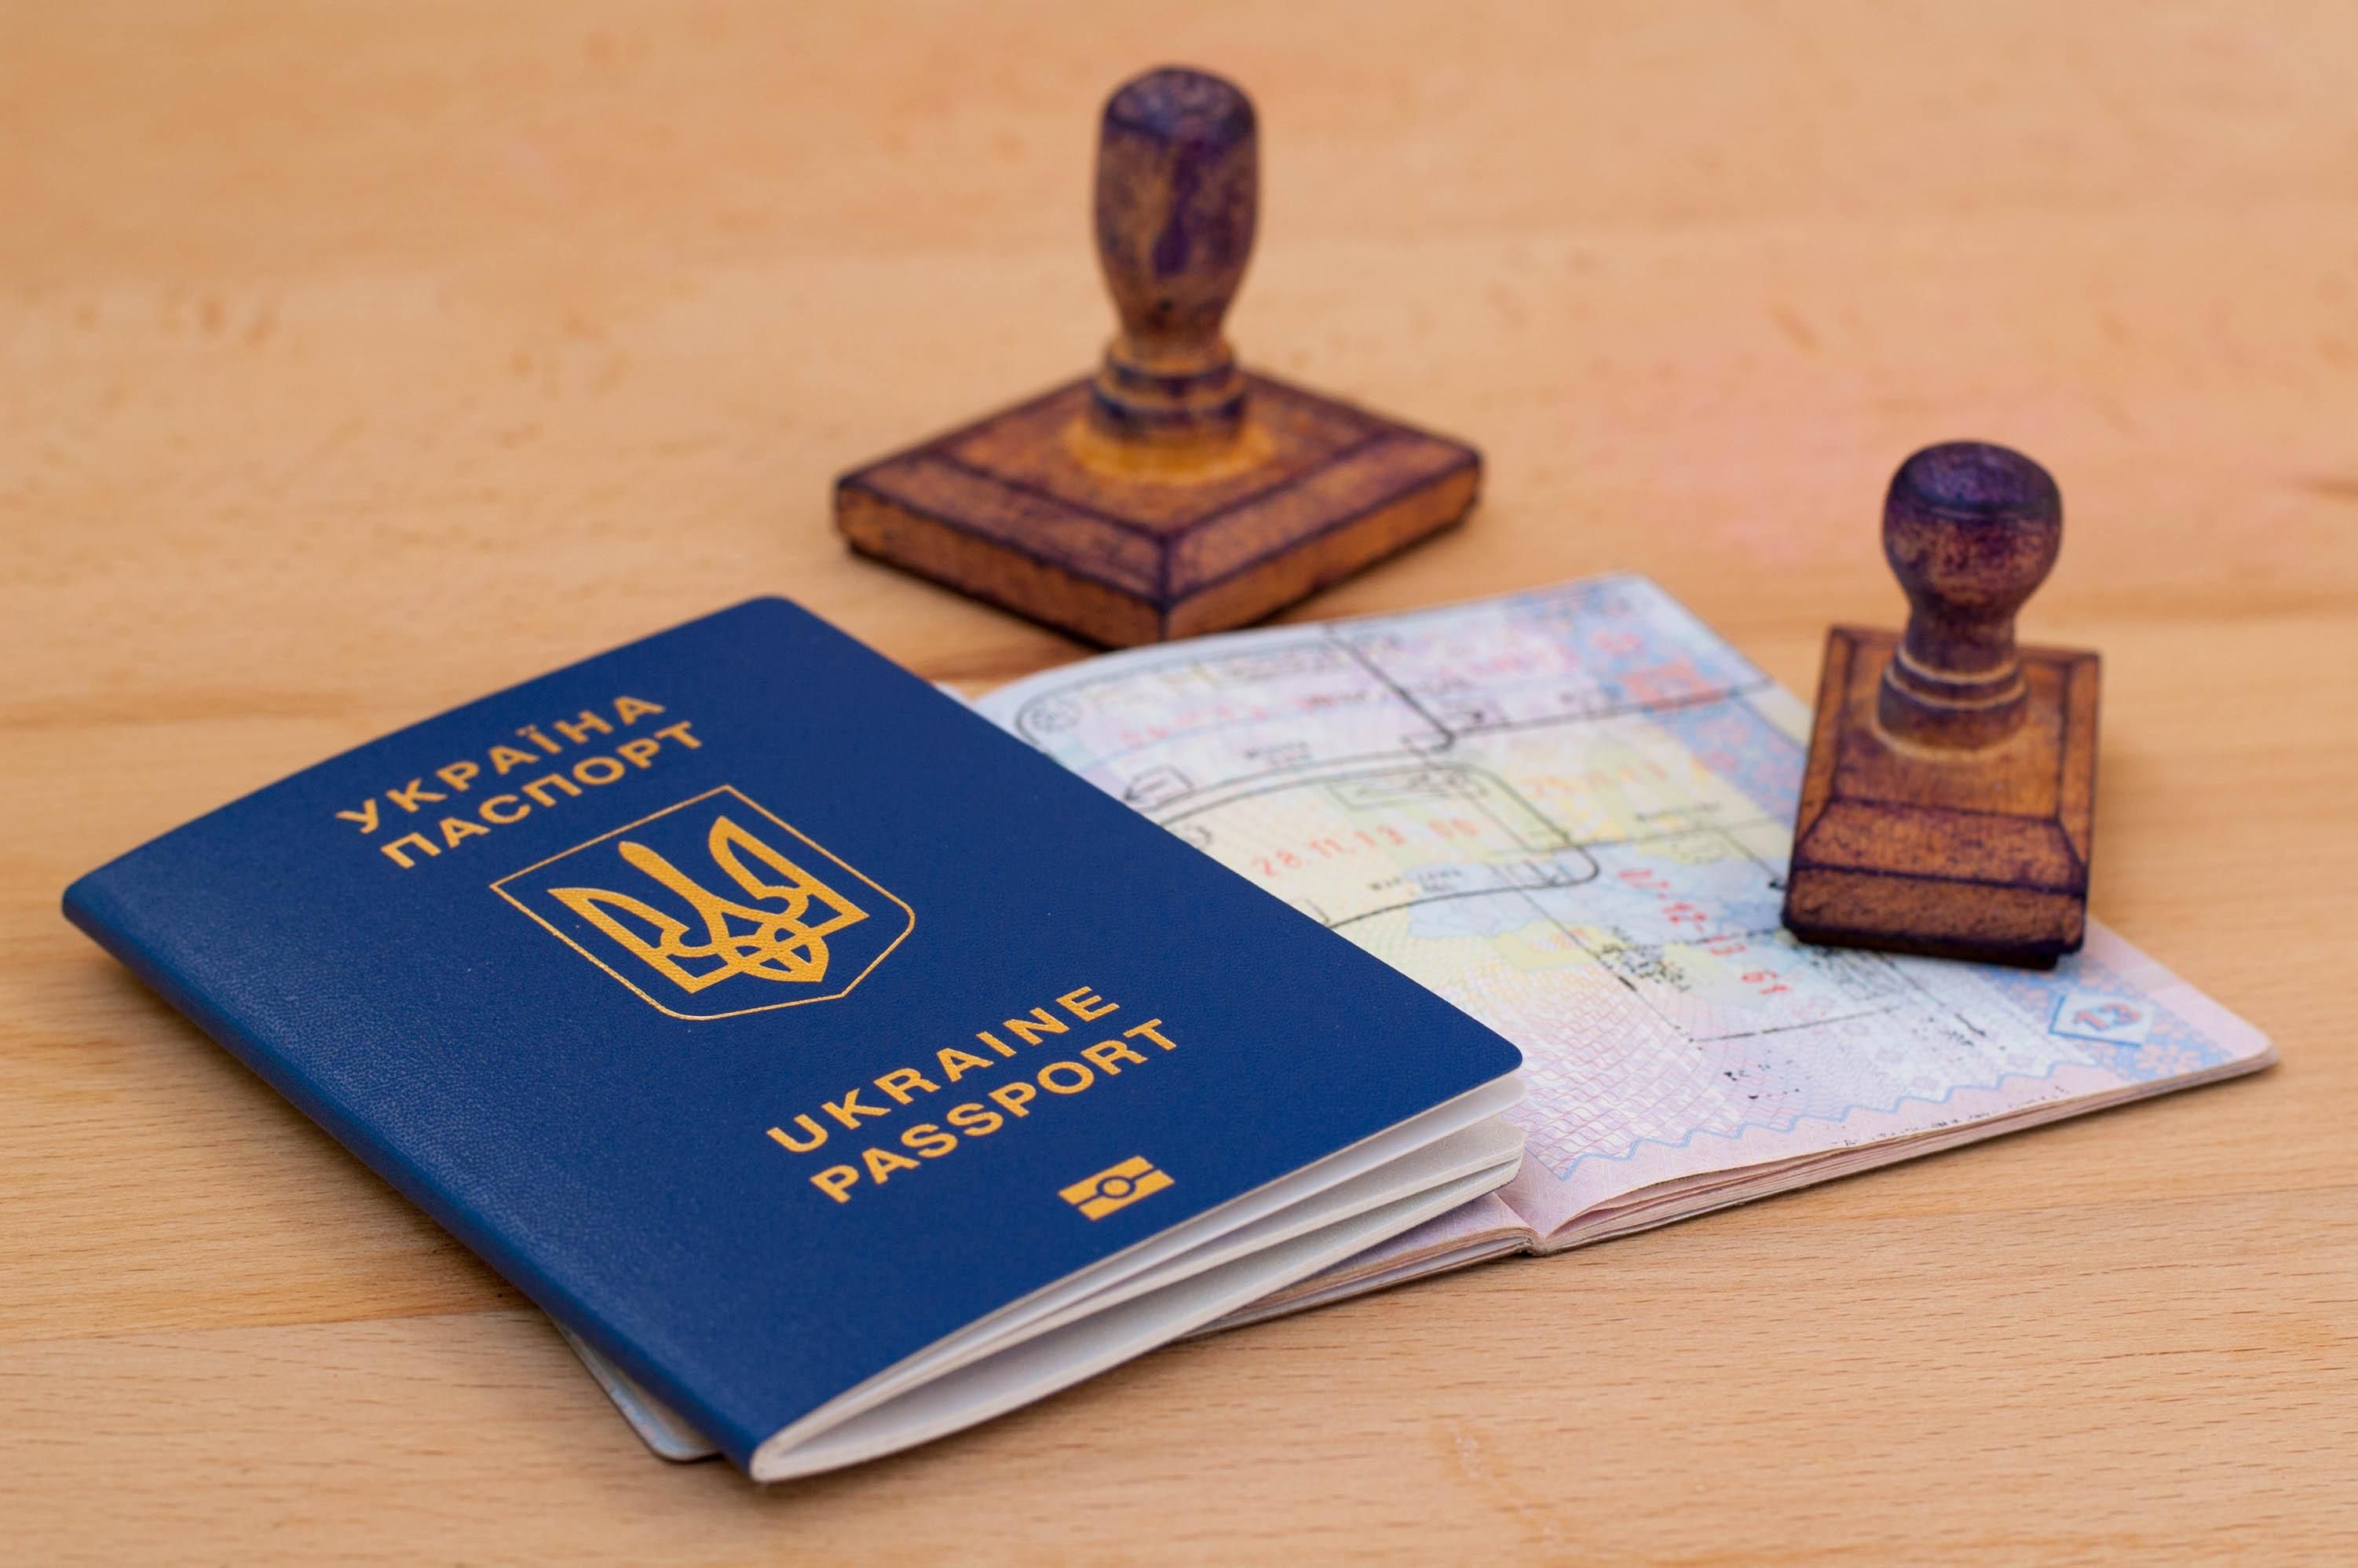 Що має зробити Україна, щоб отримати безвіз зі США: думка Маркарової